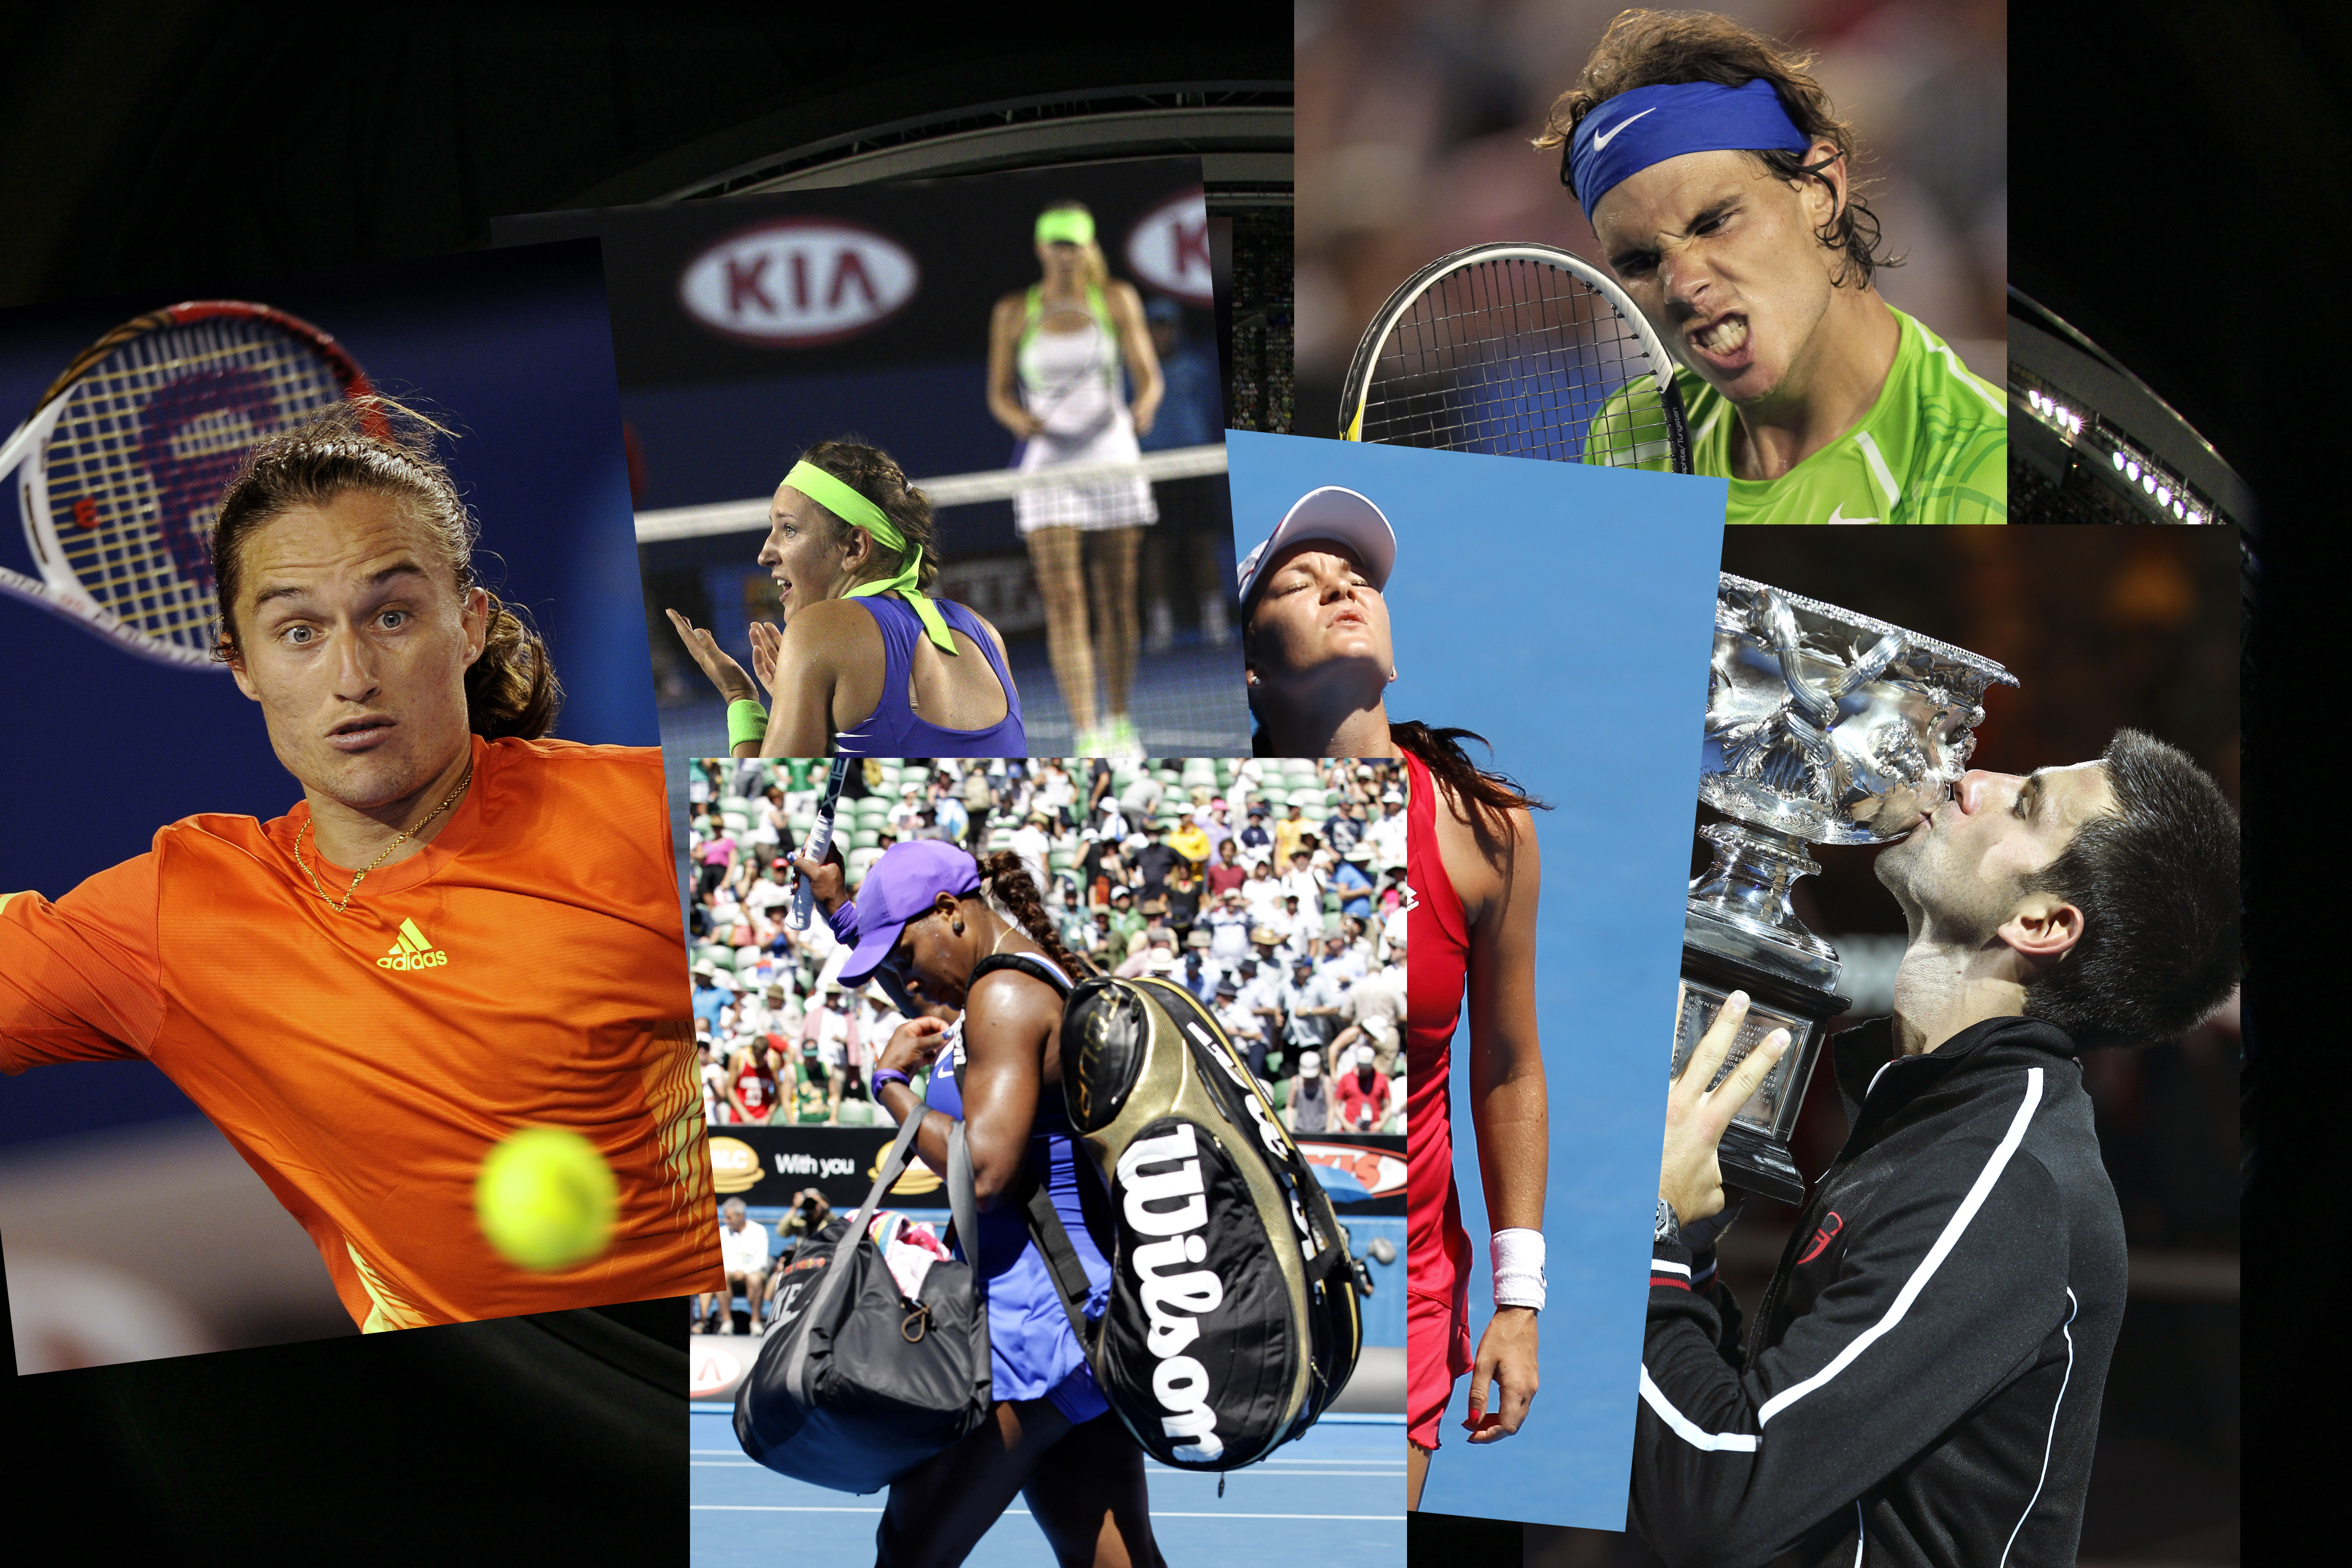 Nyheter 24 plockar fram det bästa, det knasigaste och det mest imponerande under Australian Open 2012.